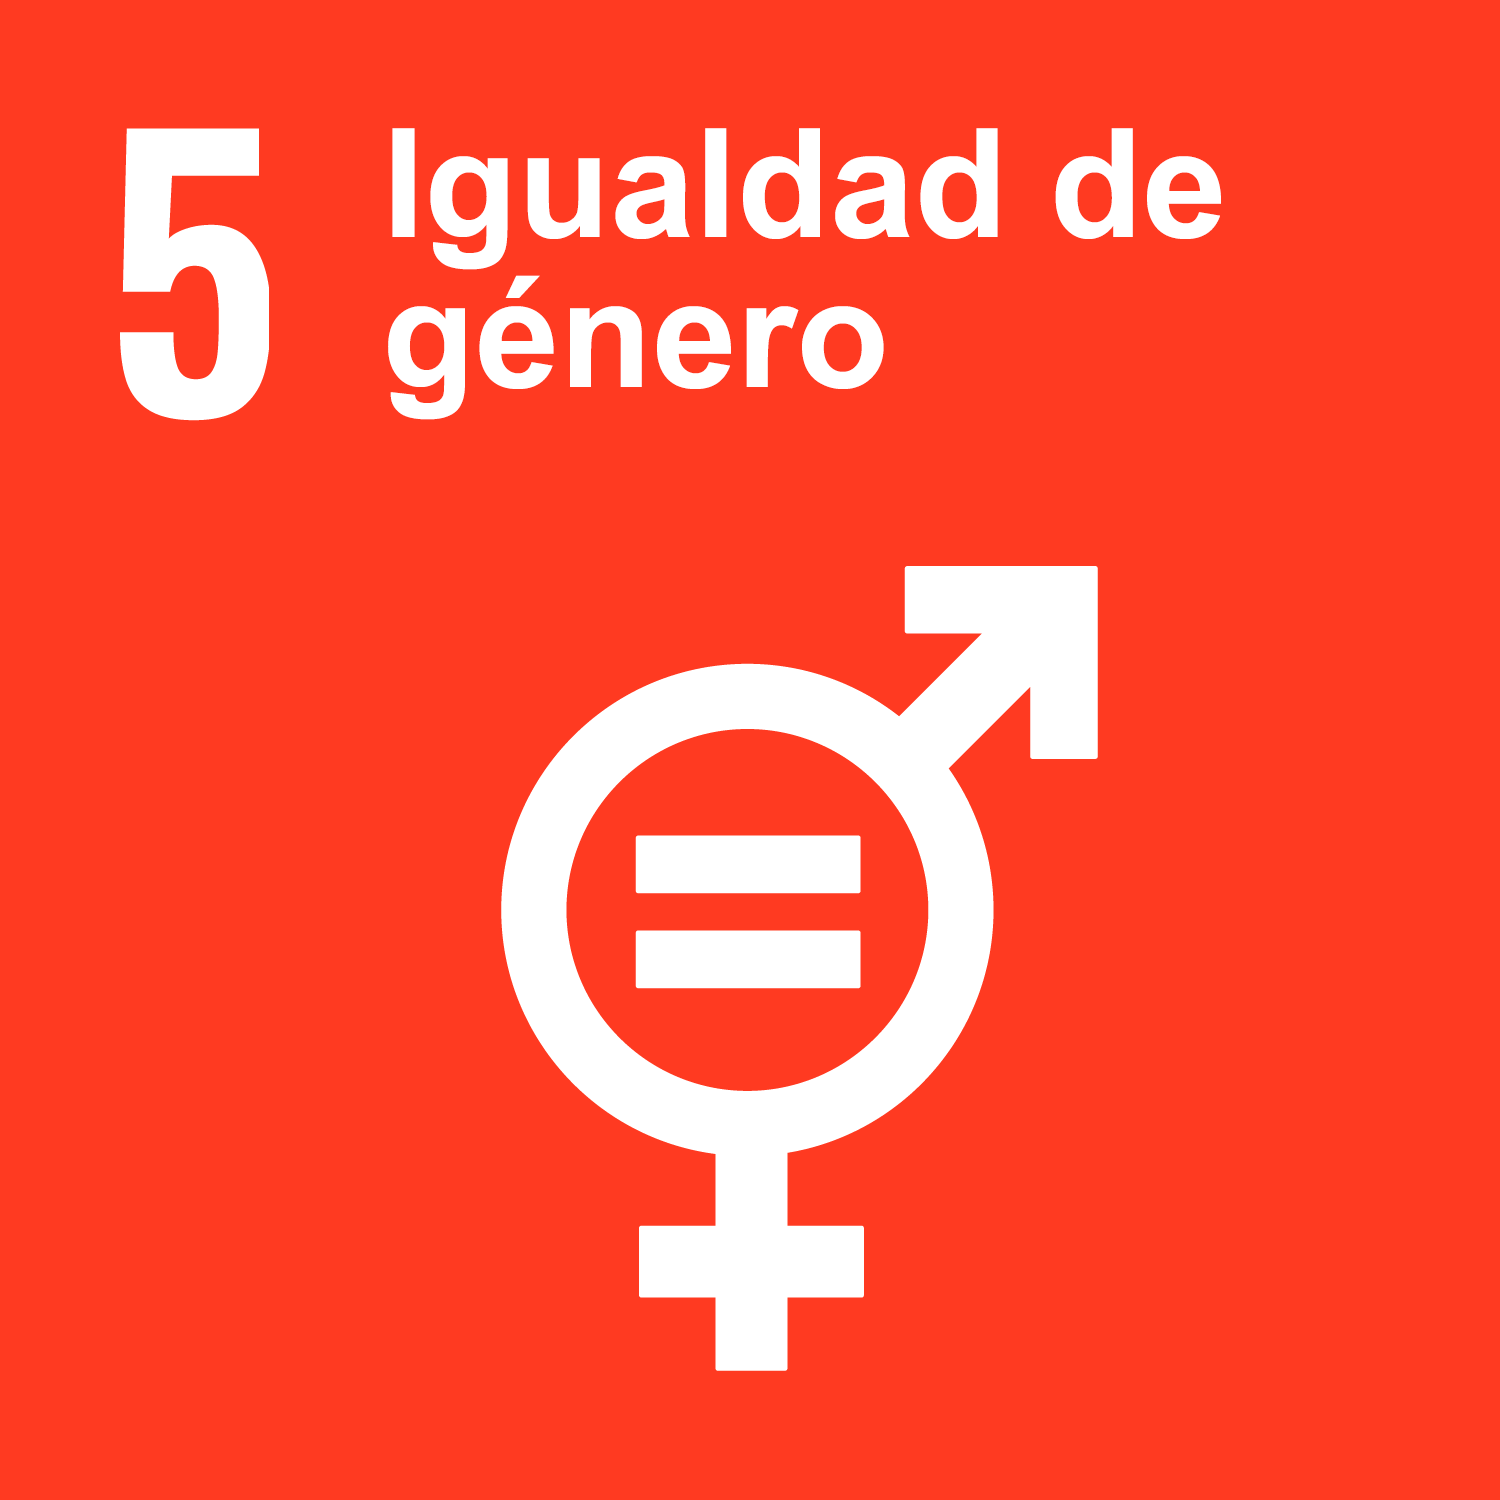 Objetivo 5: Igualdad de género